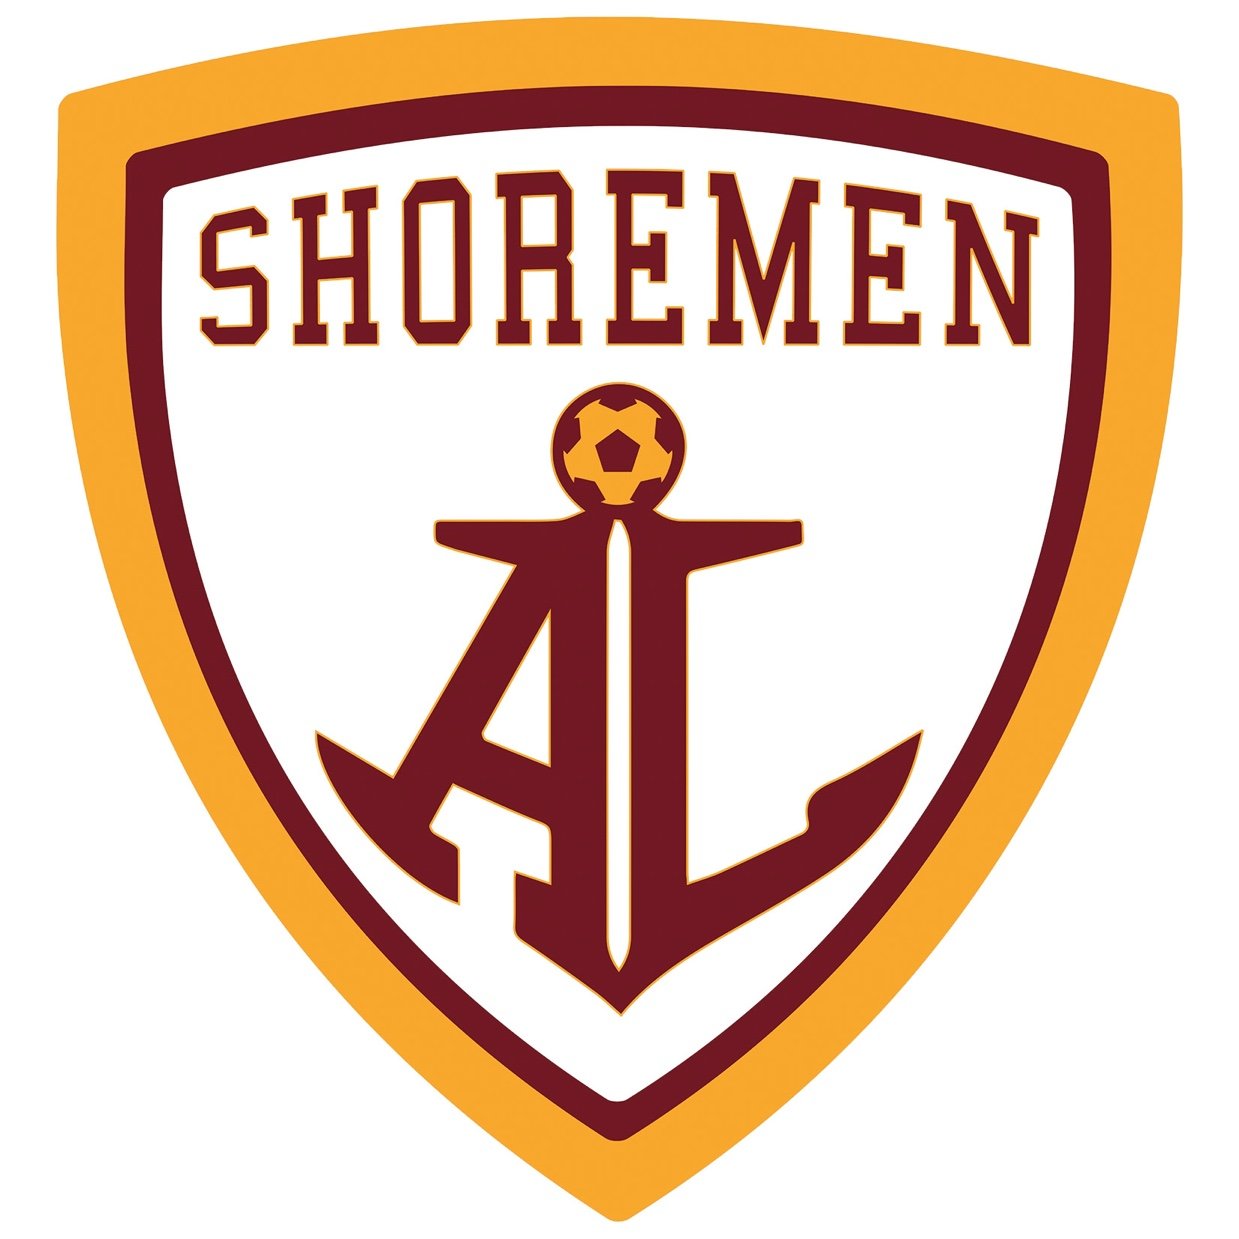 Official Twitter account for the Avon Lake High School boys soccer program.